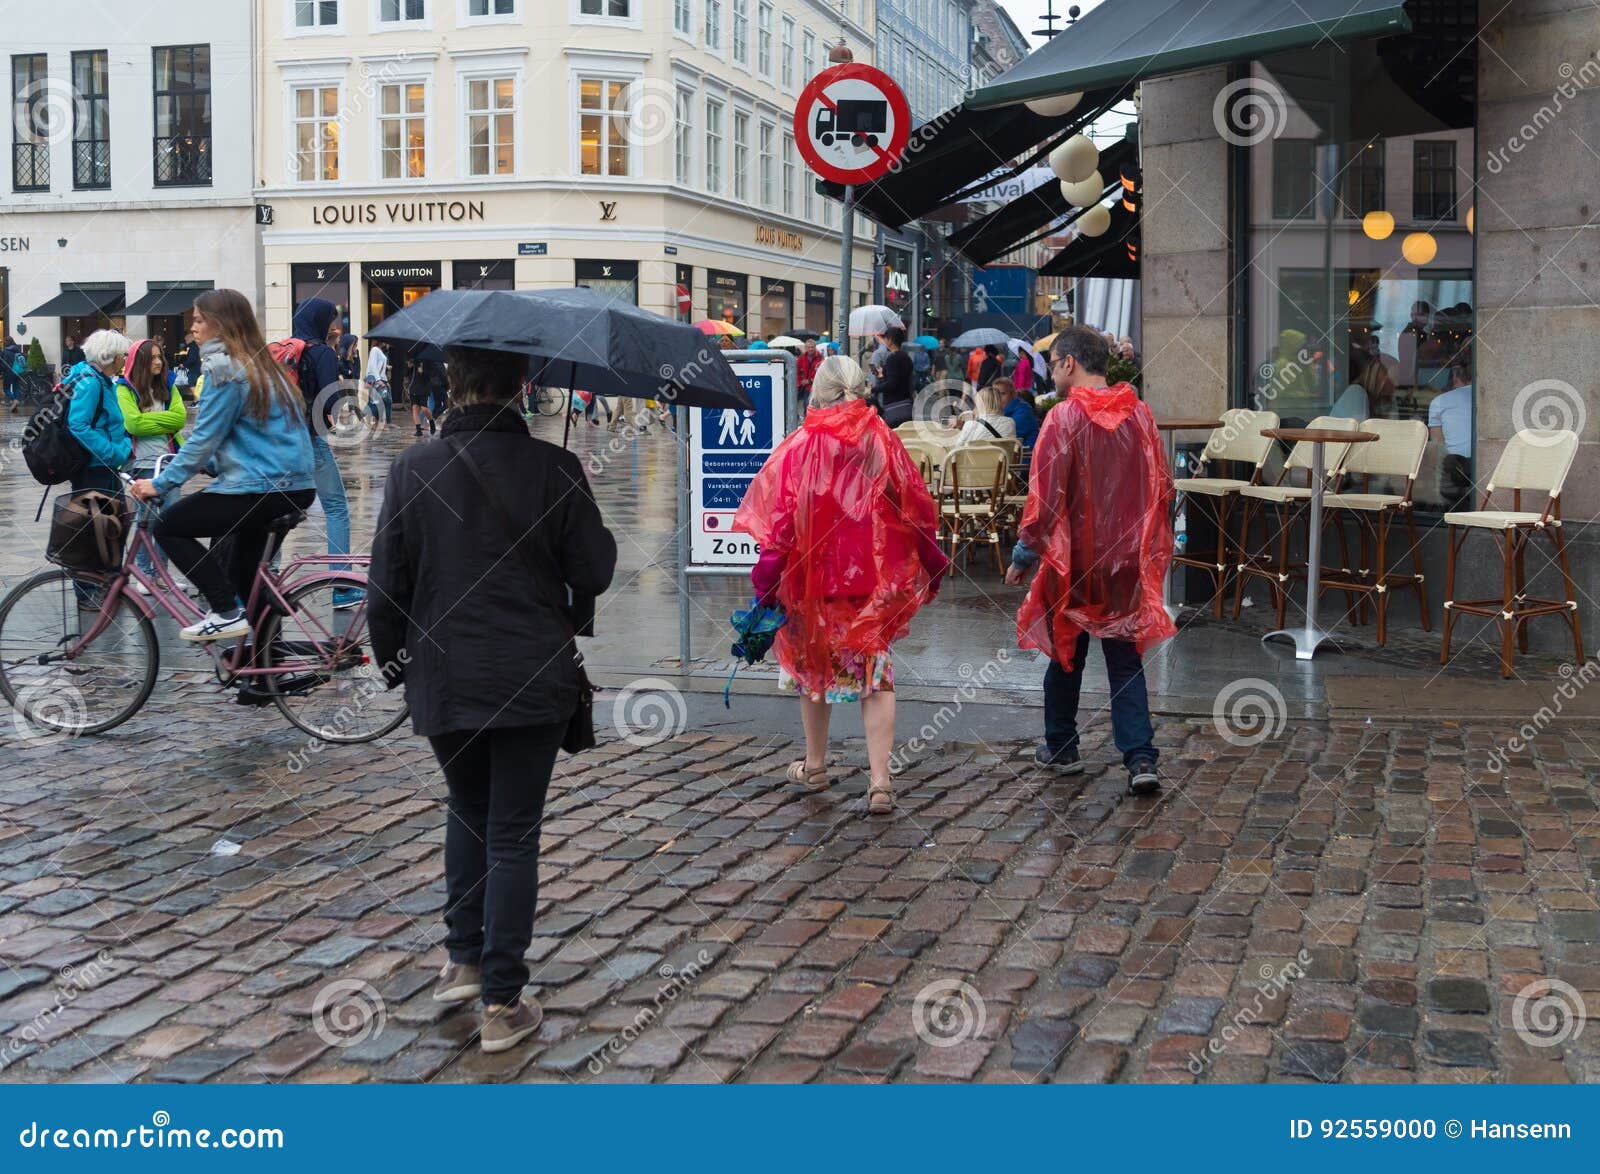 Pedestrial Zone in Copenhagen Editorial Image - Image of umbrella ...